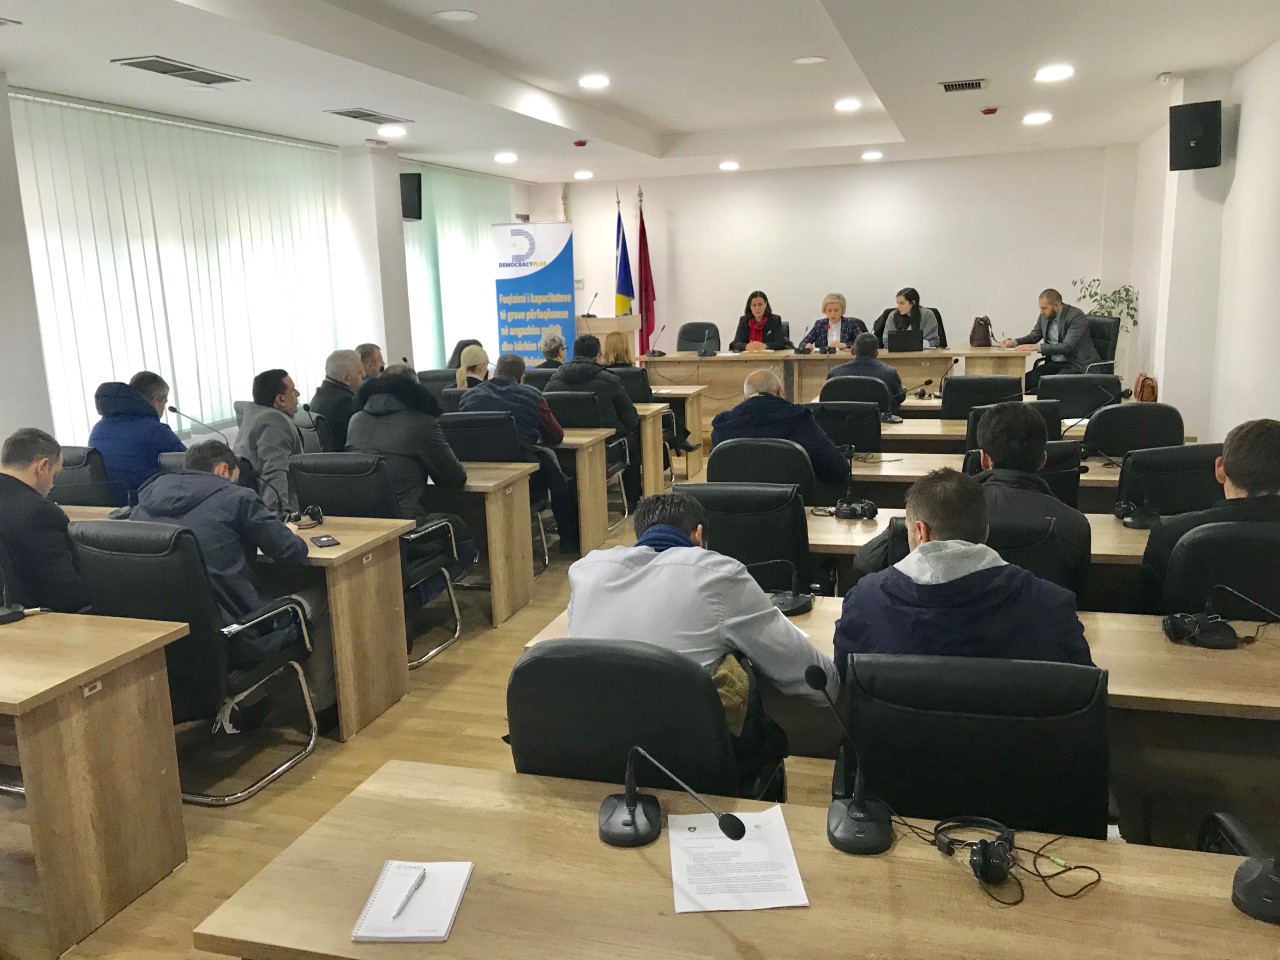 Qytetarët e Fushë Kosovës bashkëbiseduan me përfaqësueset e tyre në kuvend komunal